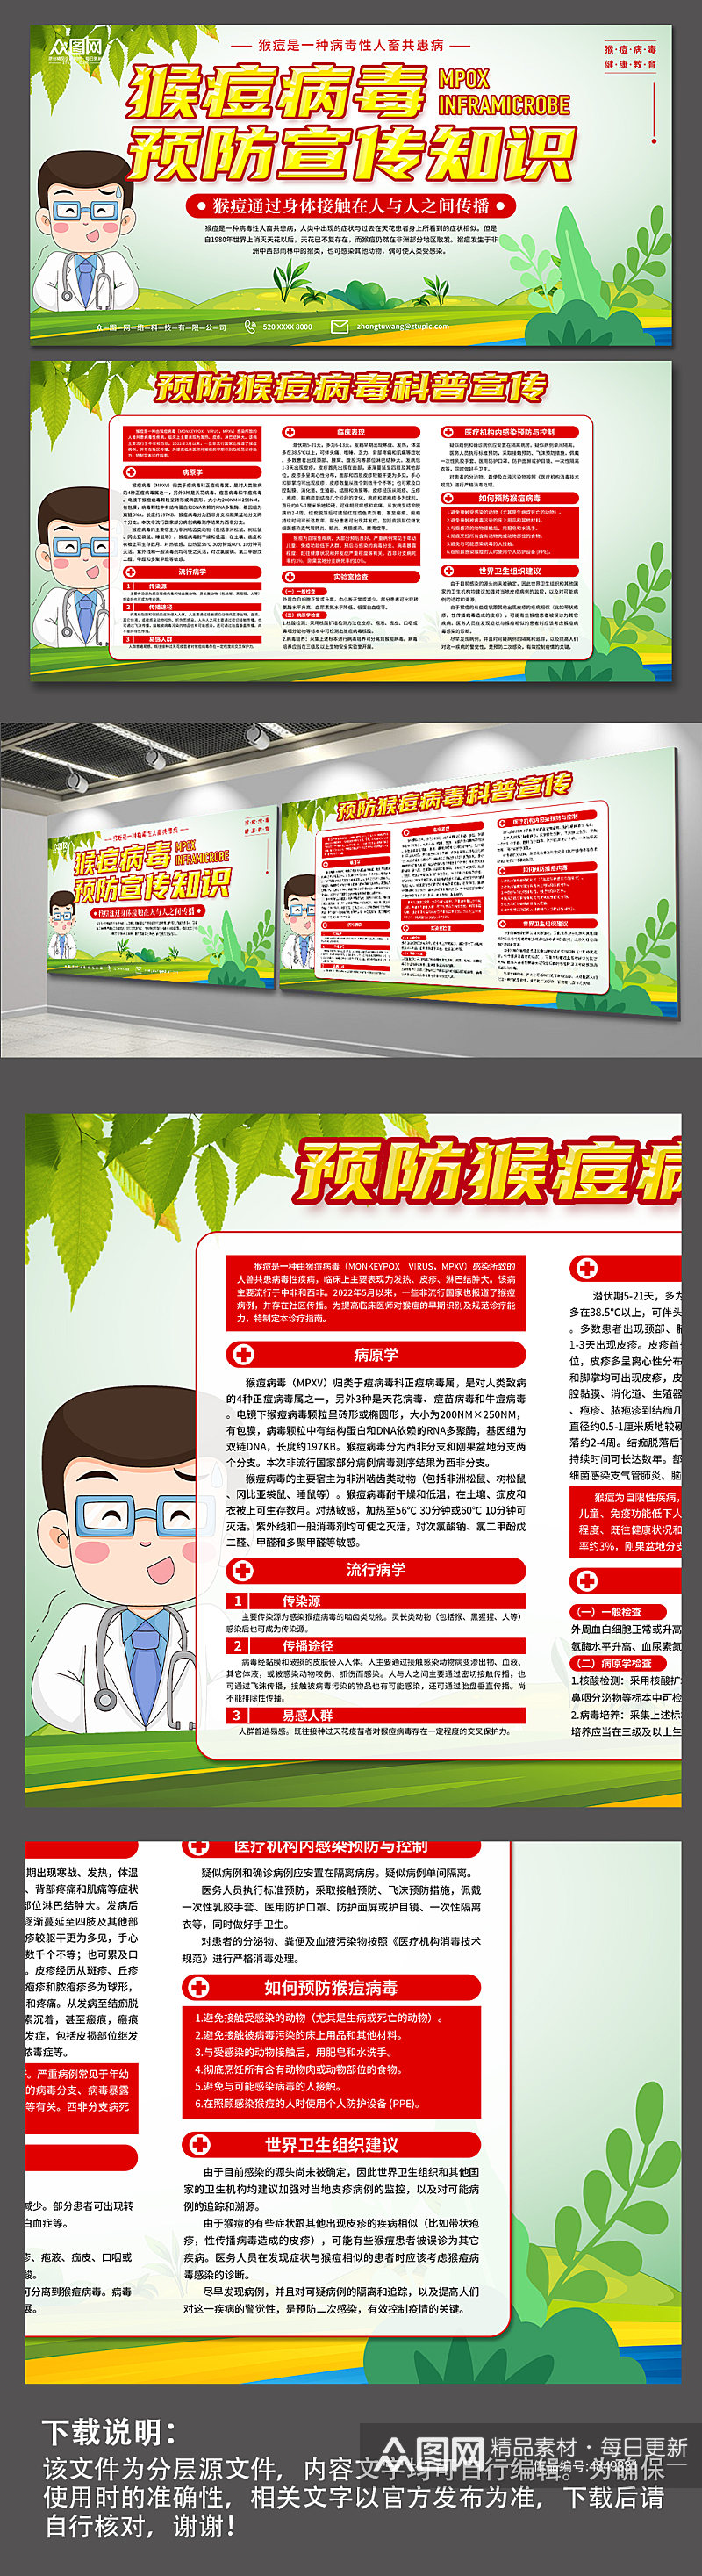 绿色预防猴痘病毒科普宣传展板素材